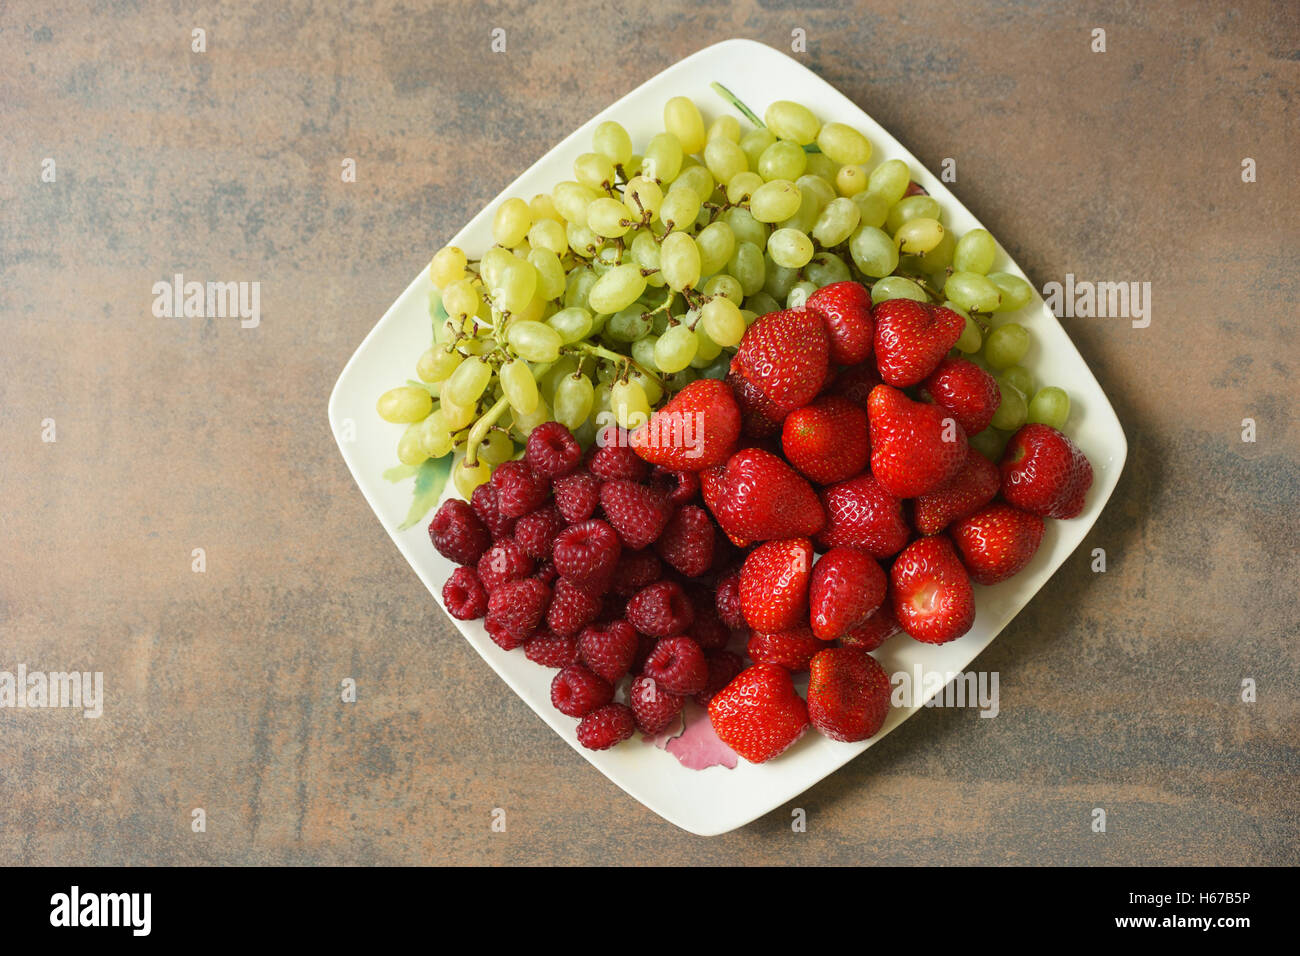 Piastra con miscela di fragole, lamponi e uva, vista dall'alto Foto Stock